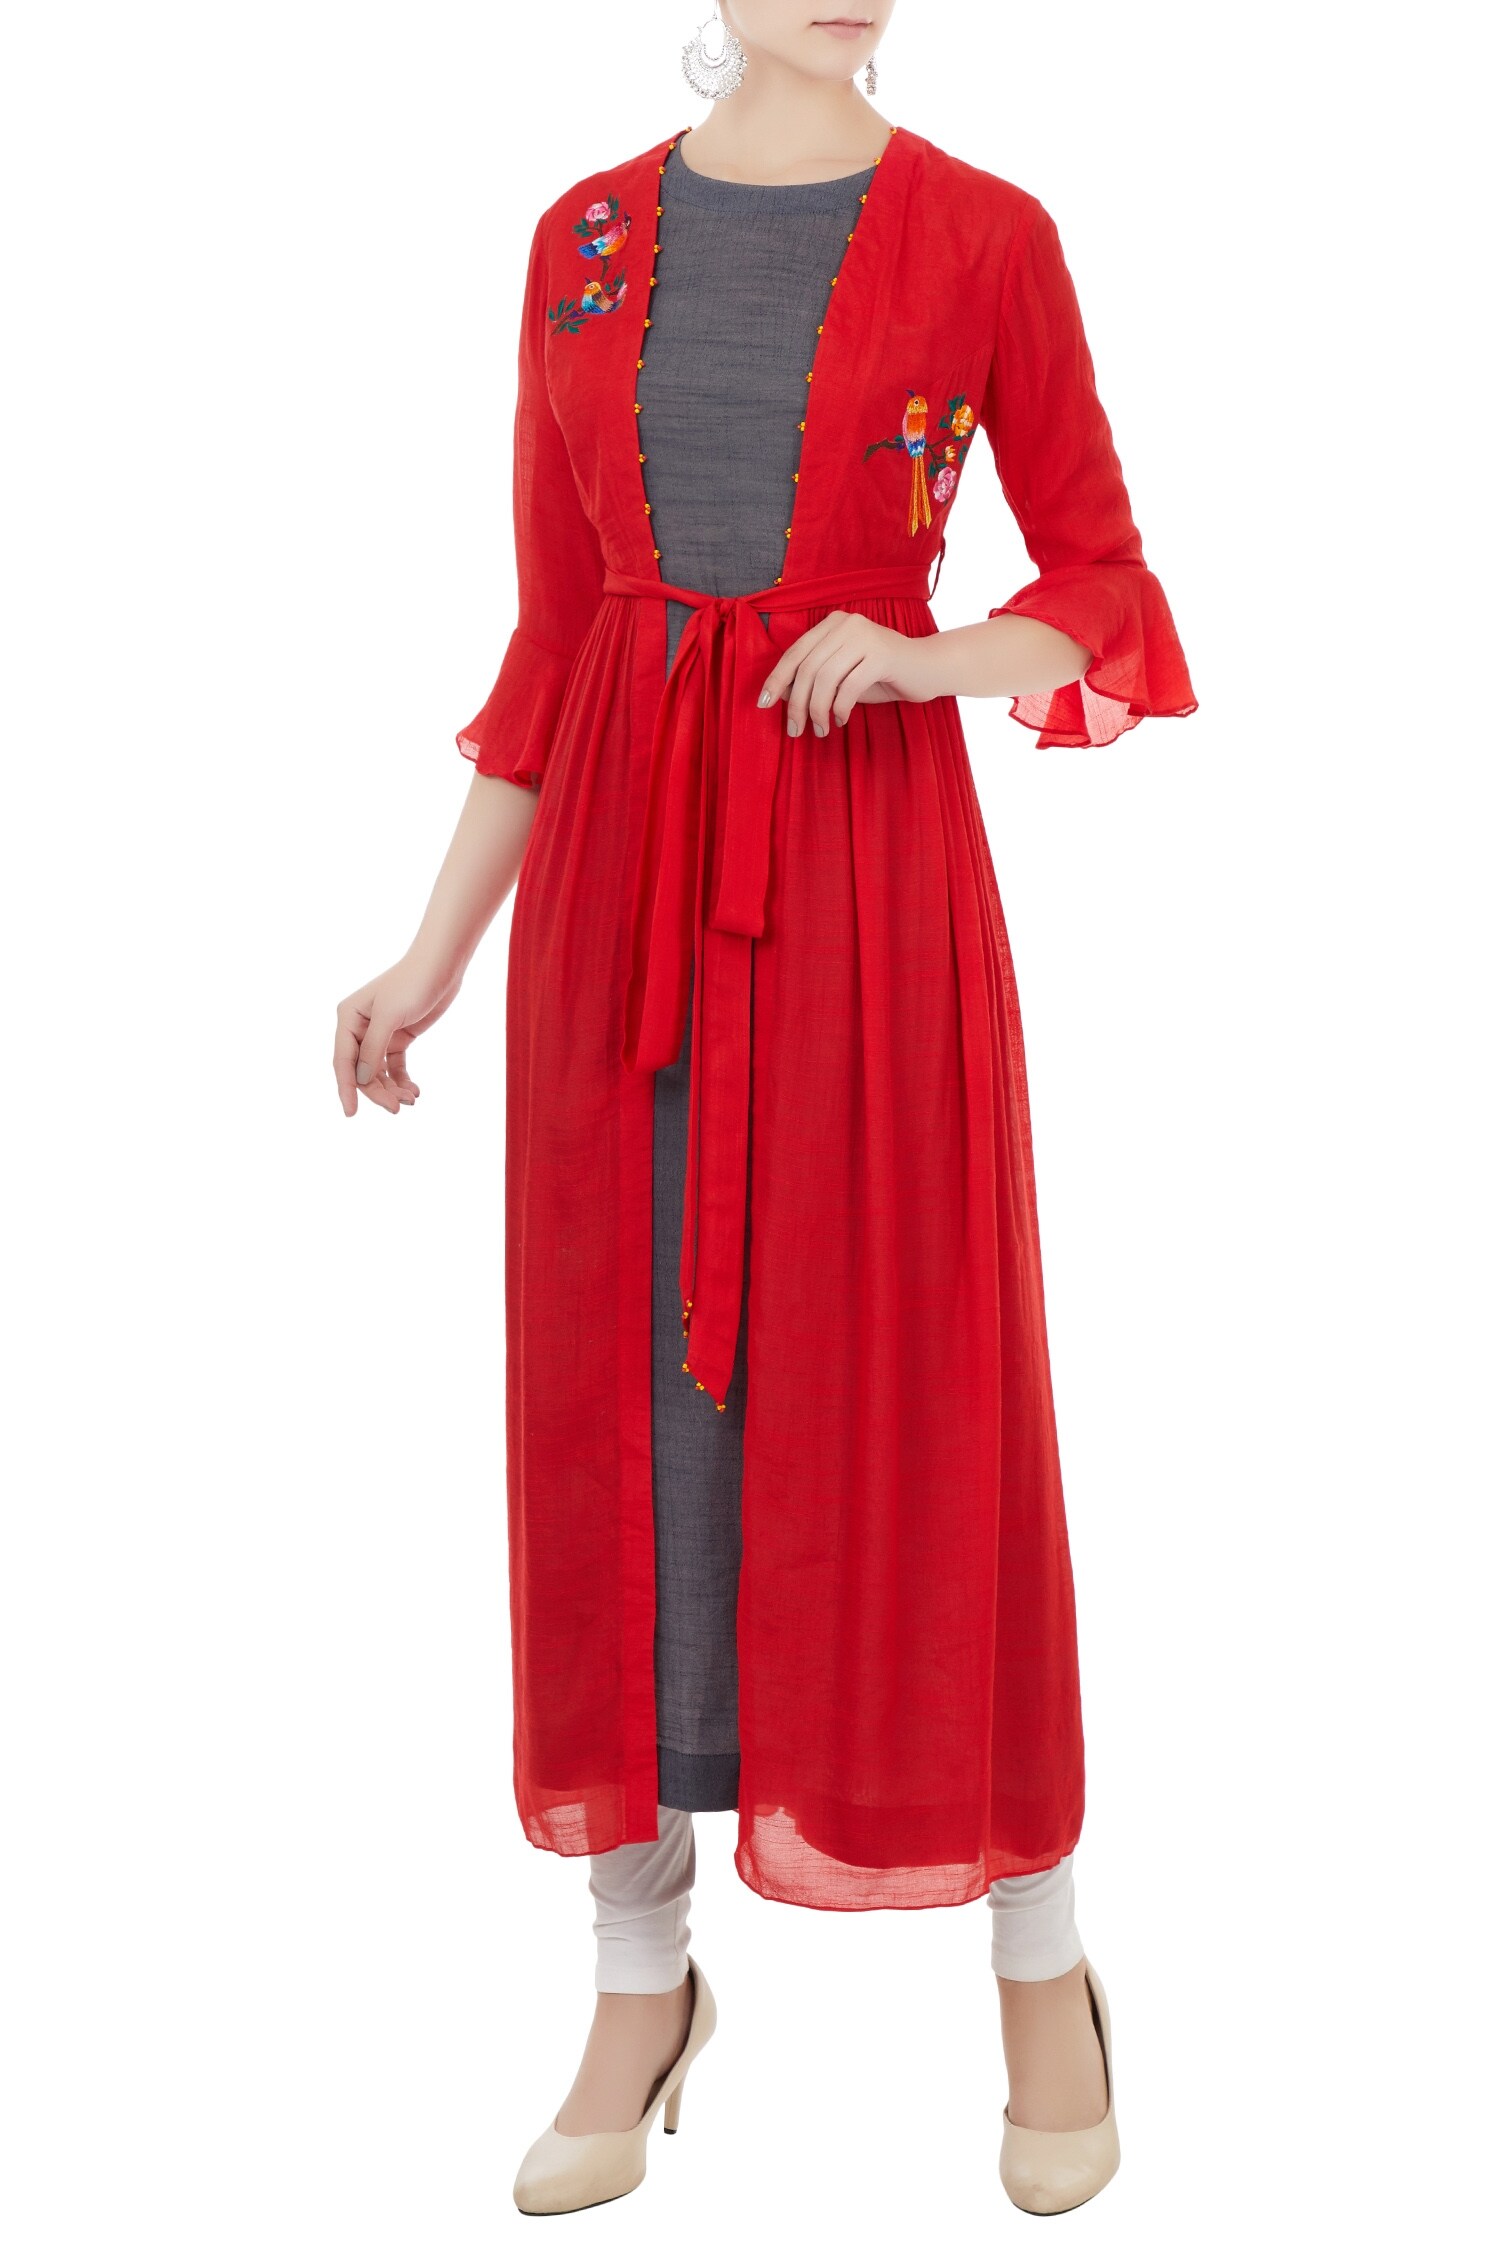 Desert Shine by Sulochana Jangir Red Linen Silk Embroidered Bird Motifs Sleeveless Kurta With Jacket For Women